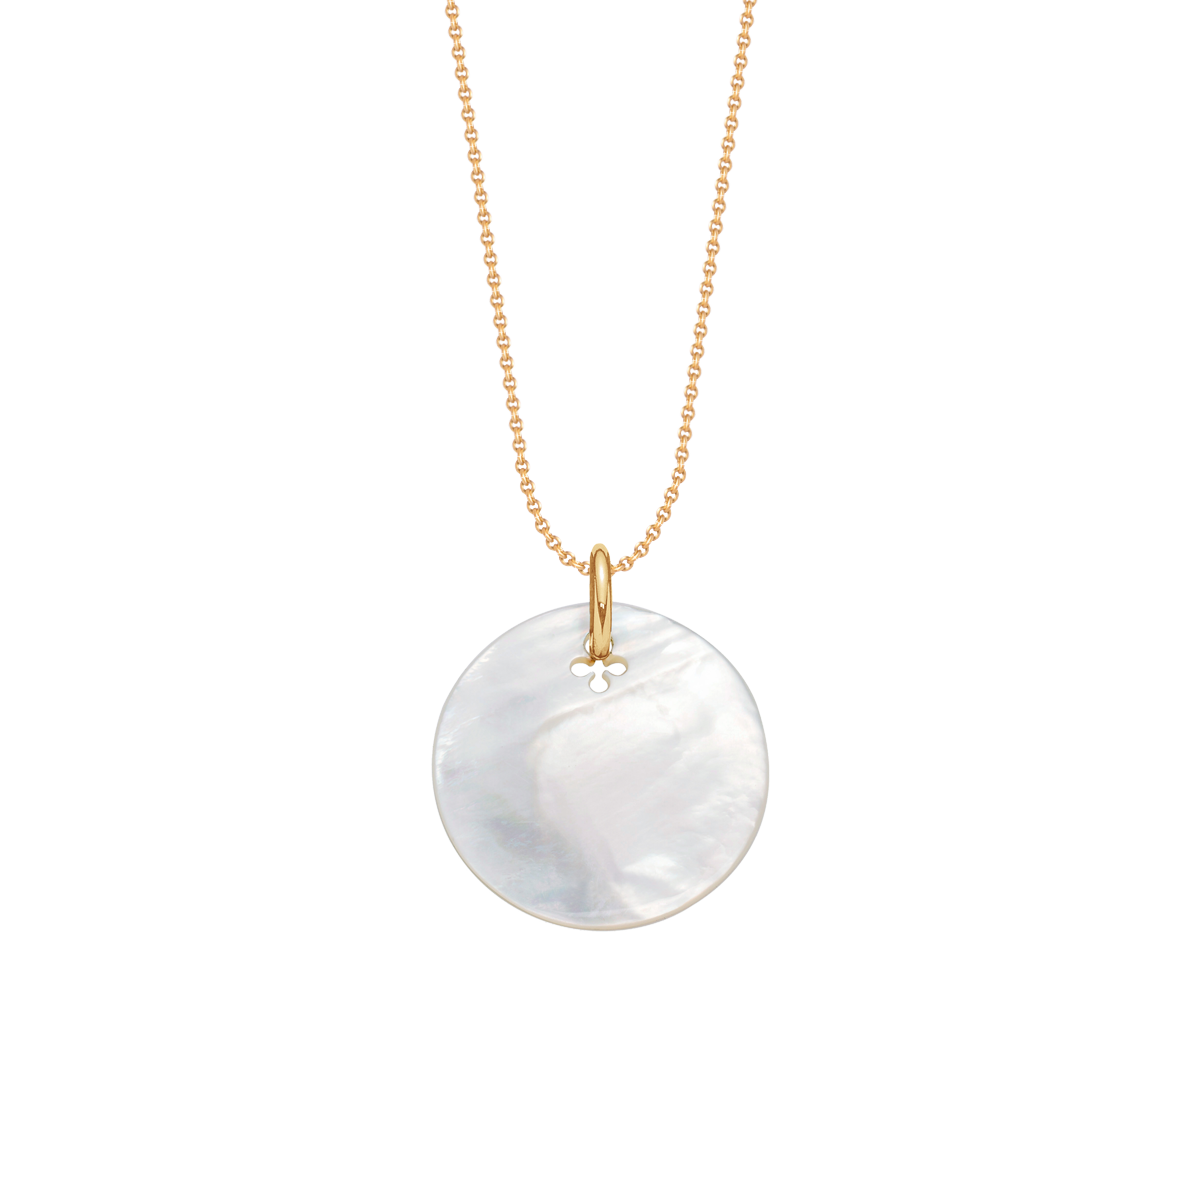 Naszyjnik z medalikiem z masy perłowej na pozłacanym cienkim klasycznym łańcuszku